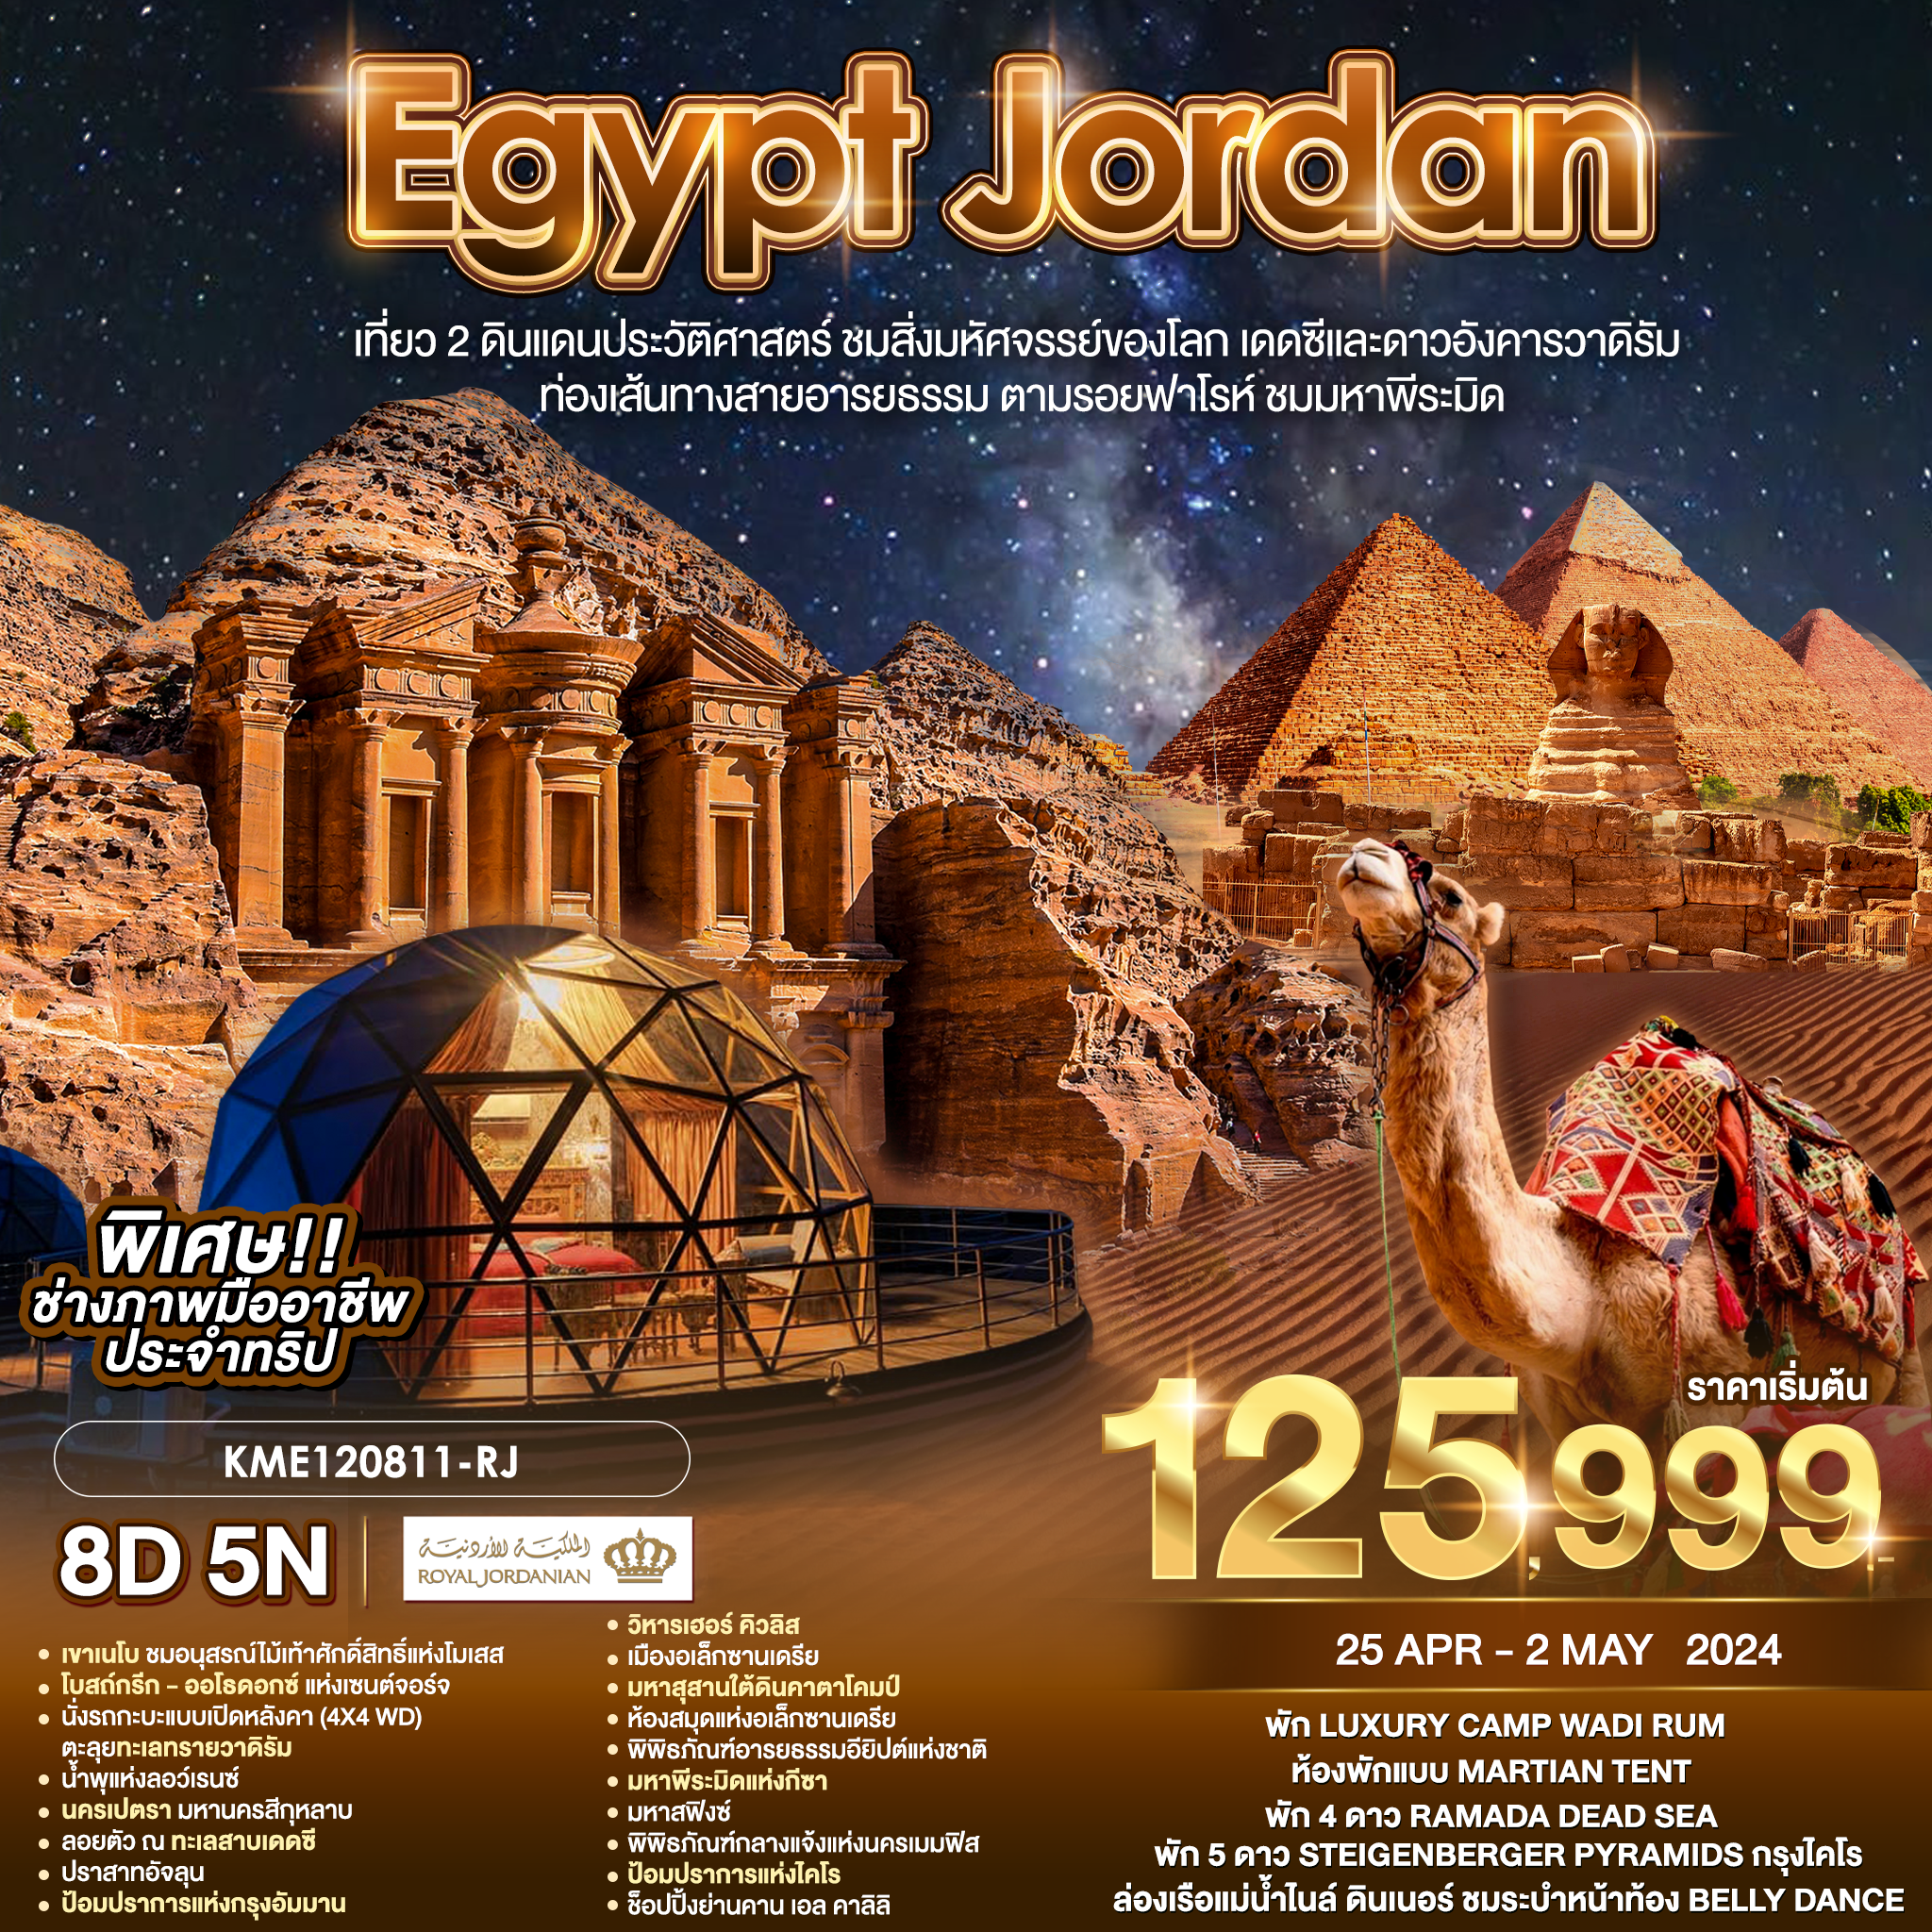 EGYPT JORDAN เที่ยว 2 ดินแดนประวัติศาสตร์ 8D5N BY RJ